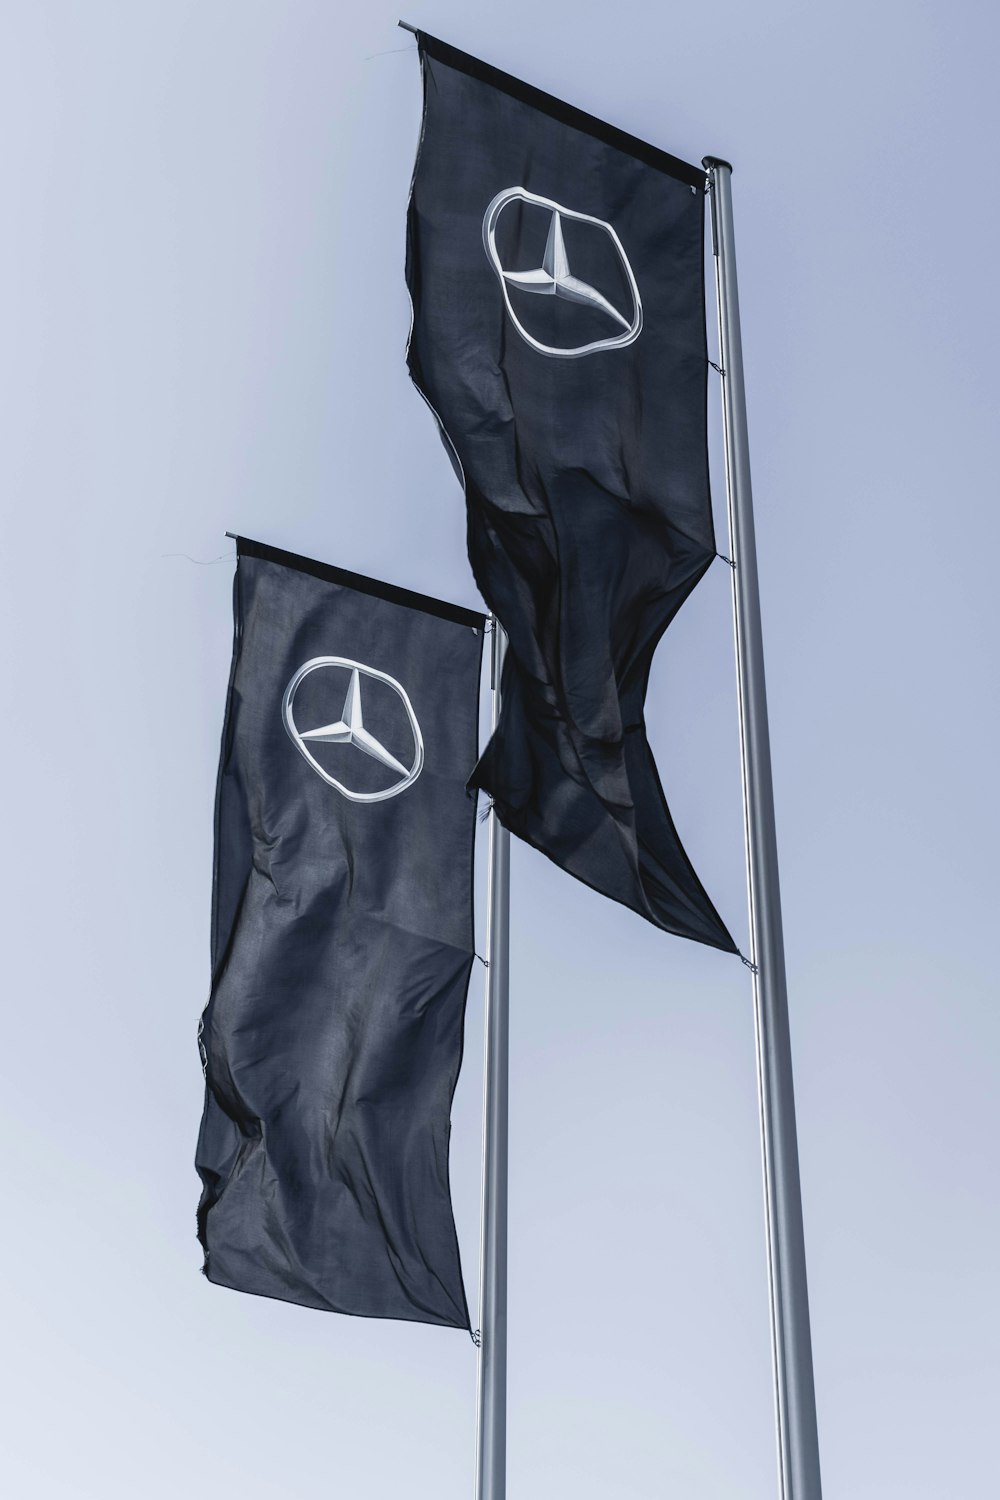 Bannières Mercedes-Benz et Scion agitées